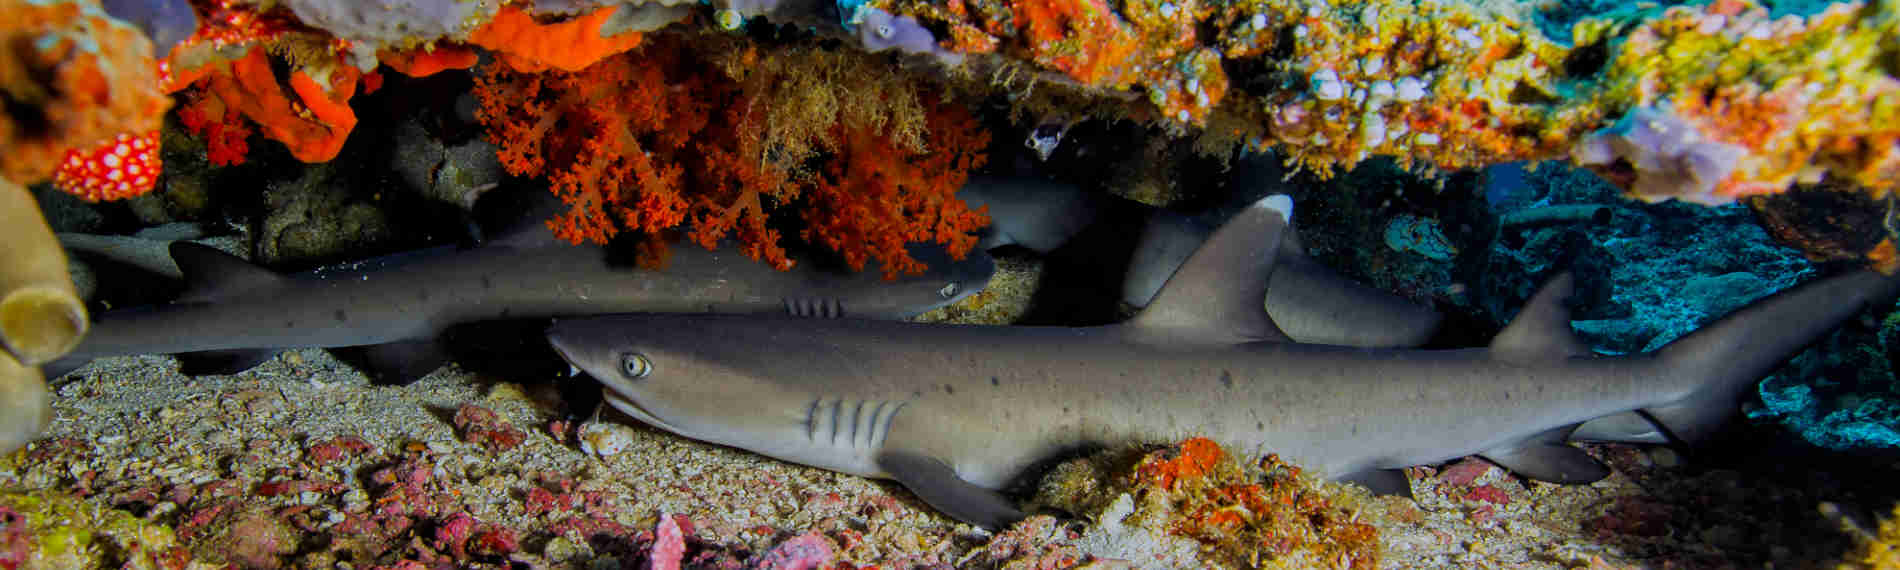 Indonesien - Nordsulawesi - Murex Bangka - Weissspitzenriffhaie